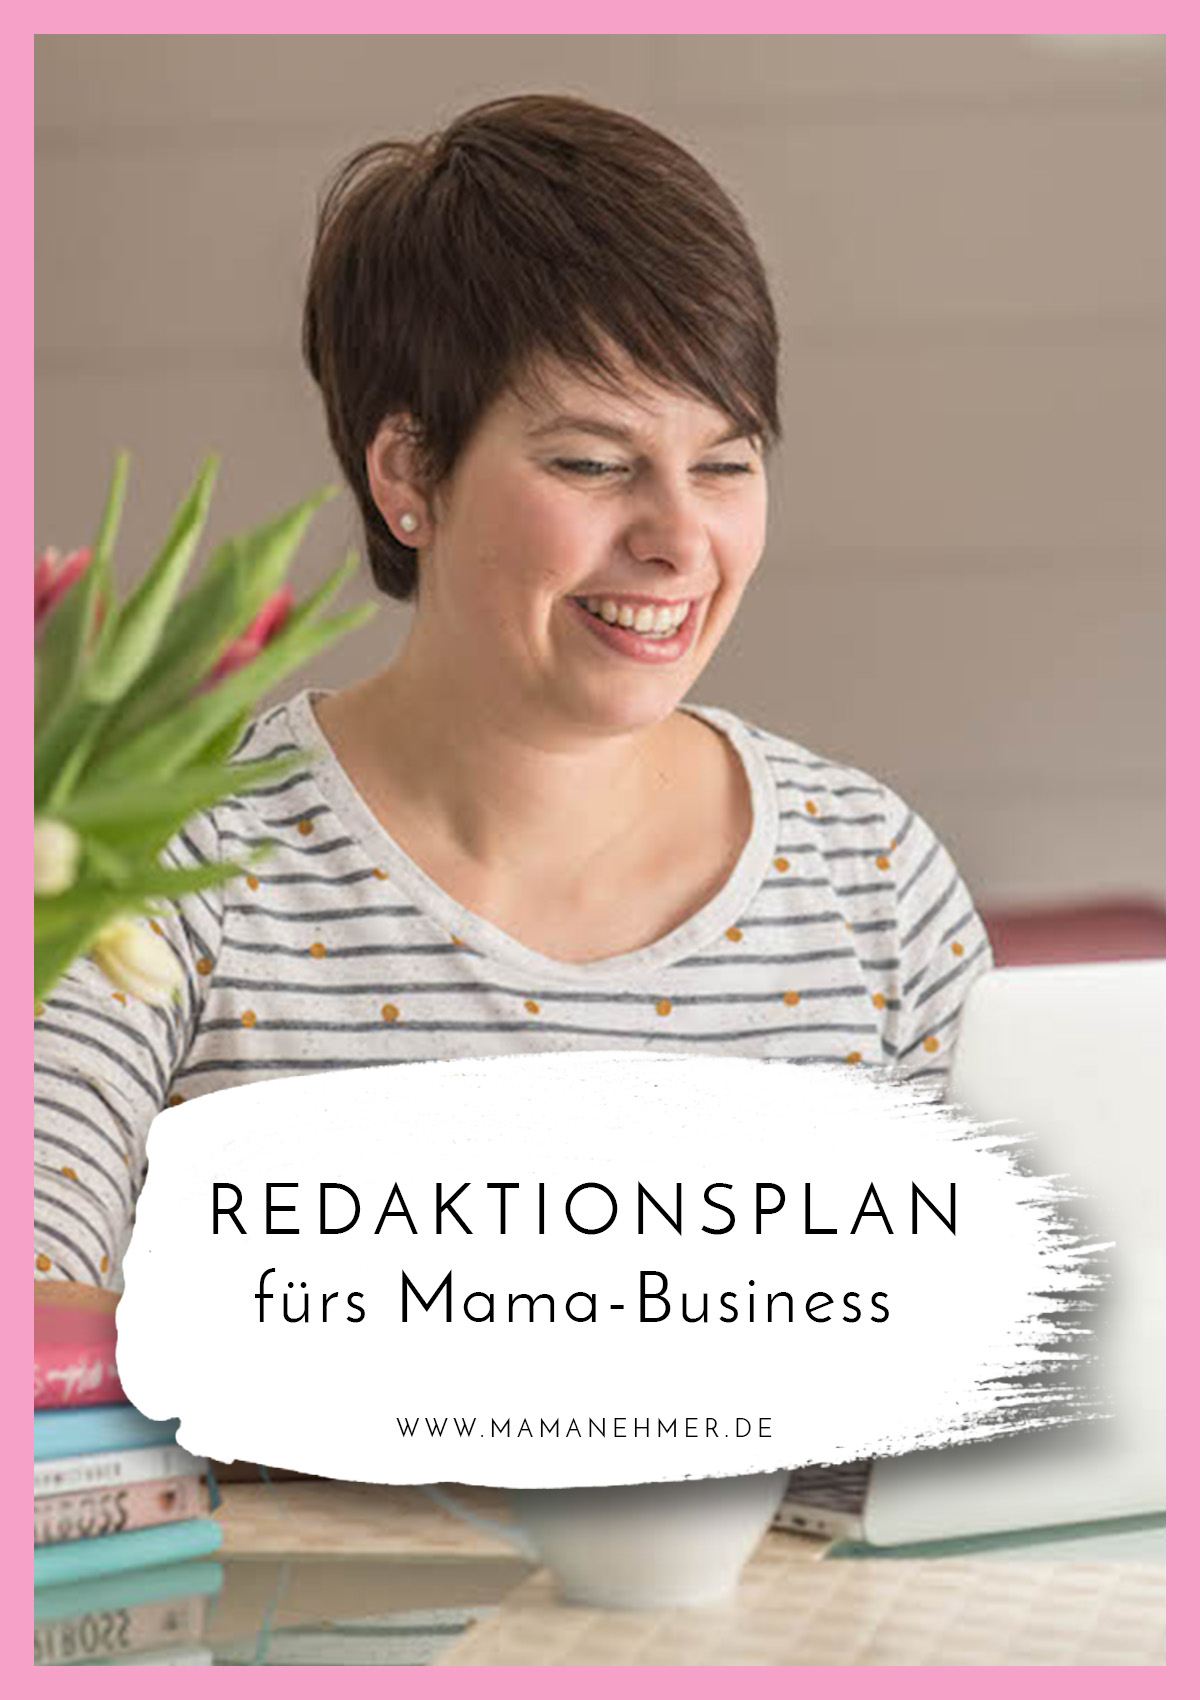 Redaktionsplan - Warum du als selbstständige Mutter unbedingt einen brauchst & warum er deutlich über die Content-Planung hinaus geht, verrate ich dir in dieser Podcast-Episode #Mamanehmer #MompreneursDe #MompreneurDe #Redaktionsplanung #Vorausplanen